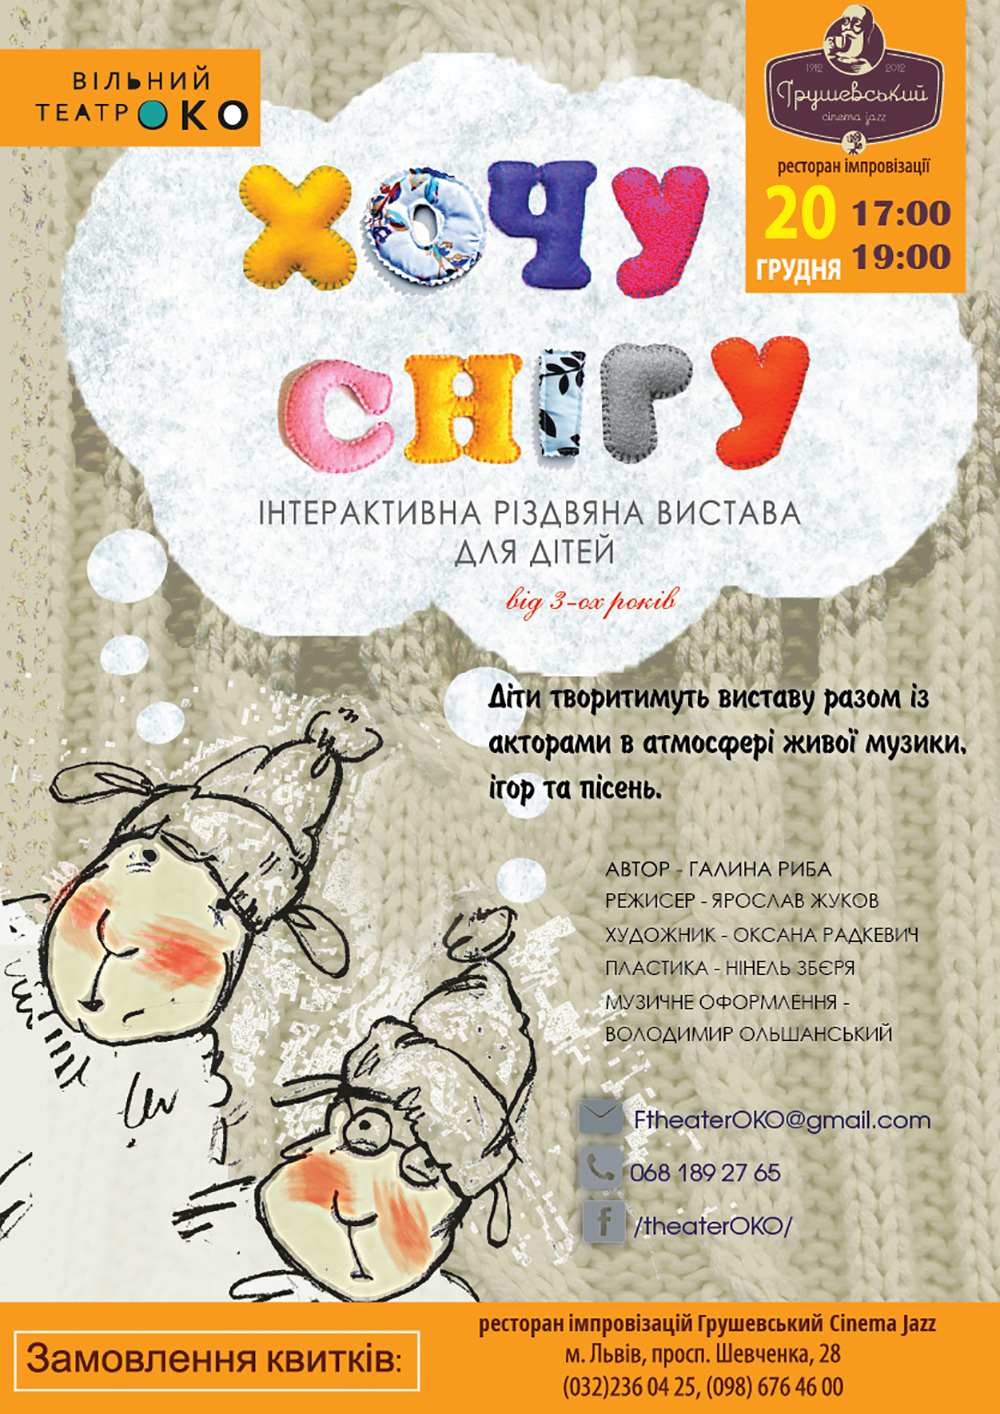 Hrushevs'kyy Cinema & Jazz Improvisational Restaurant